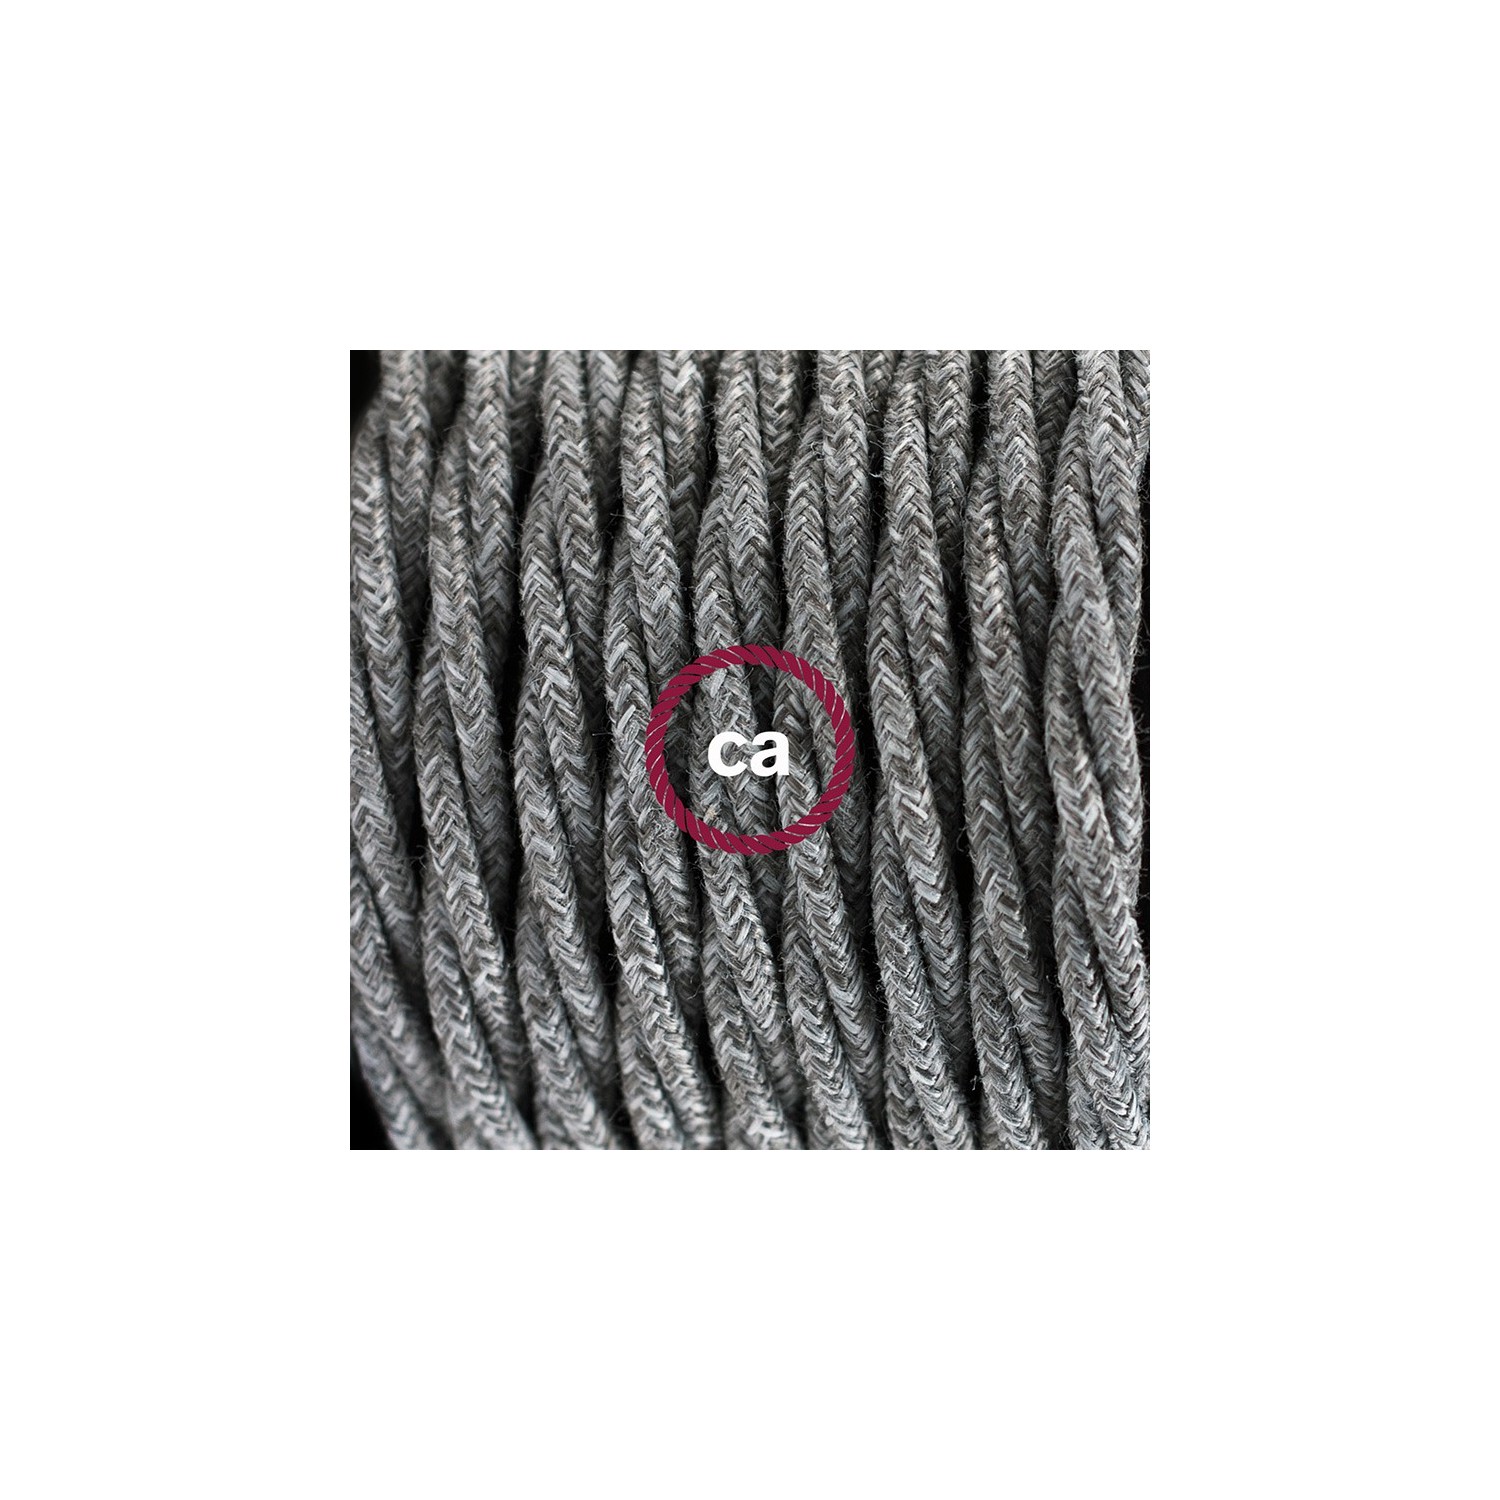 Gevlochten flexibele textielkabel van linnen met schakelaar en stekker. TN02 - grijs natuurlijk linnen 1,80 m.